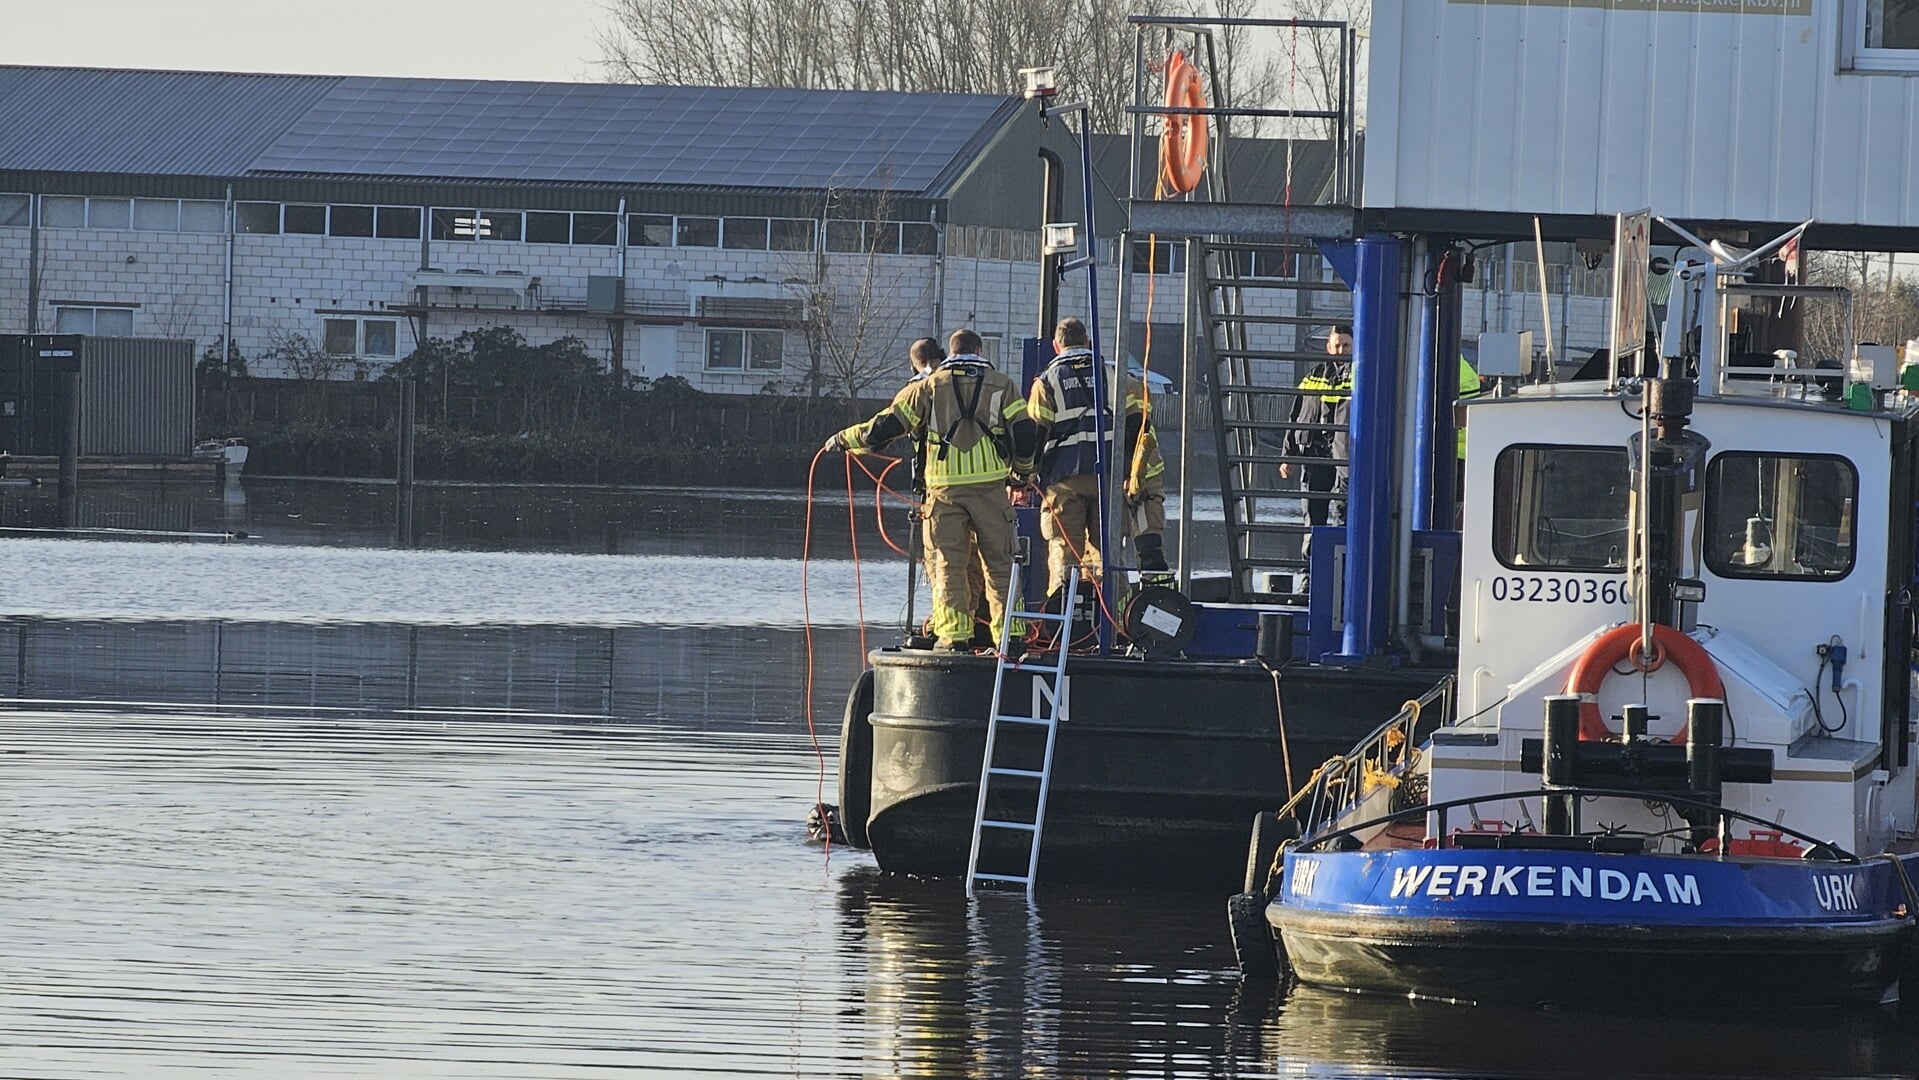 Hulpdiensten hebben donderdagochtend rond 09.30 een persoon uit het water gehaald.